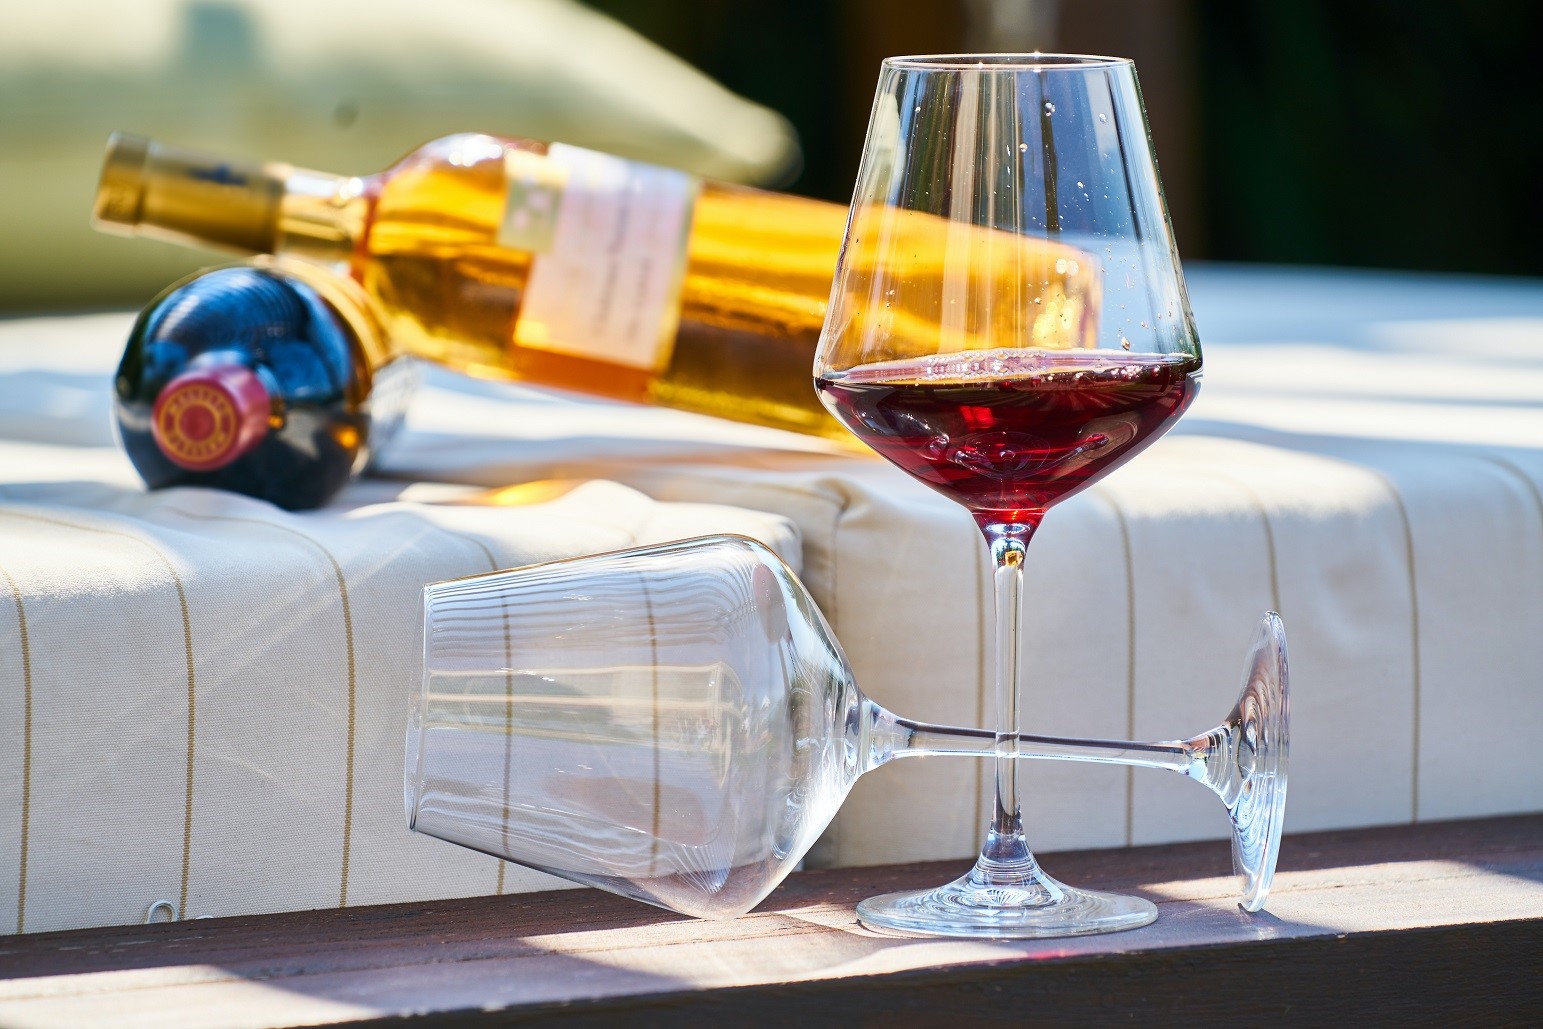 Tips para elegir la copa adecuada para cada vino